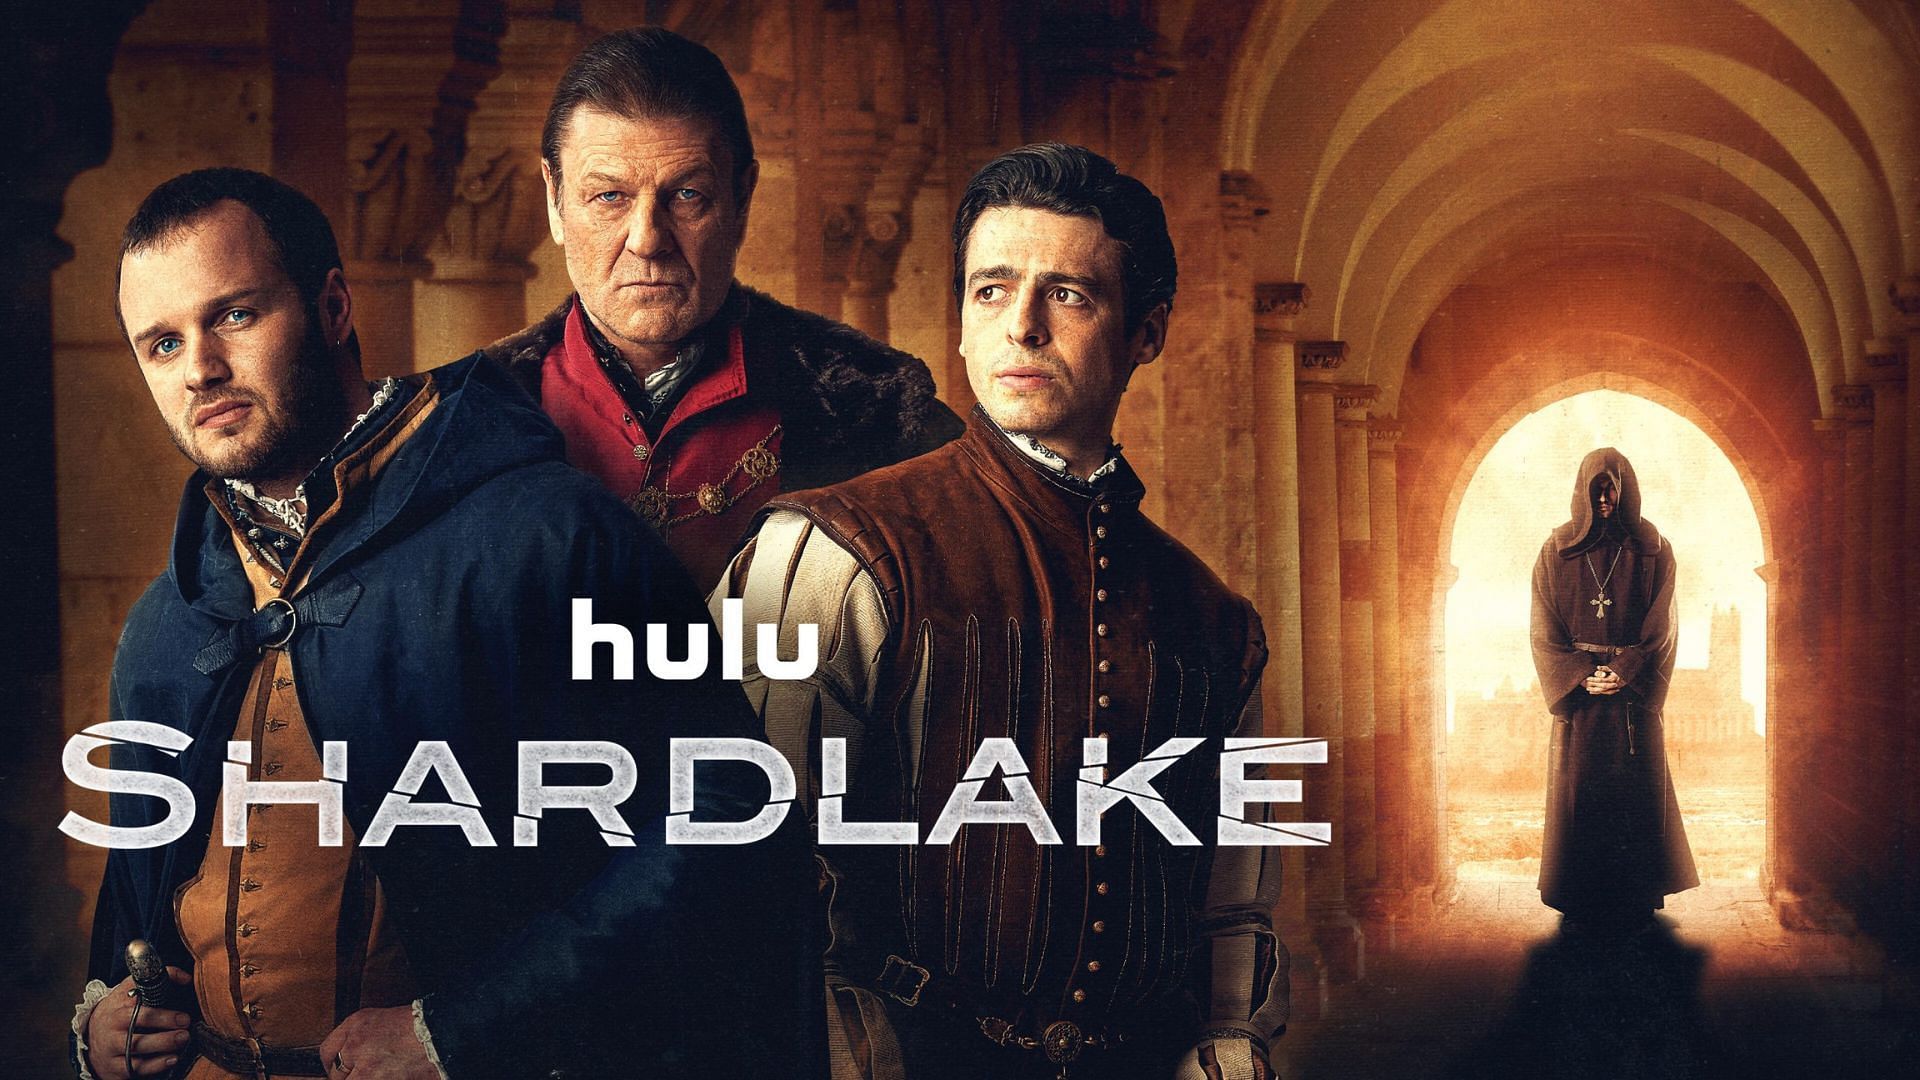 Shardlake promotional poster (Image via Hulu)